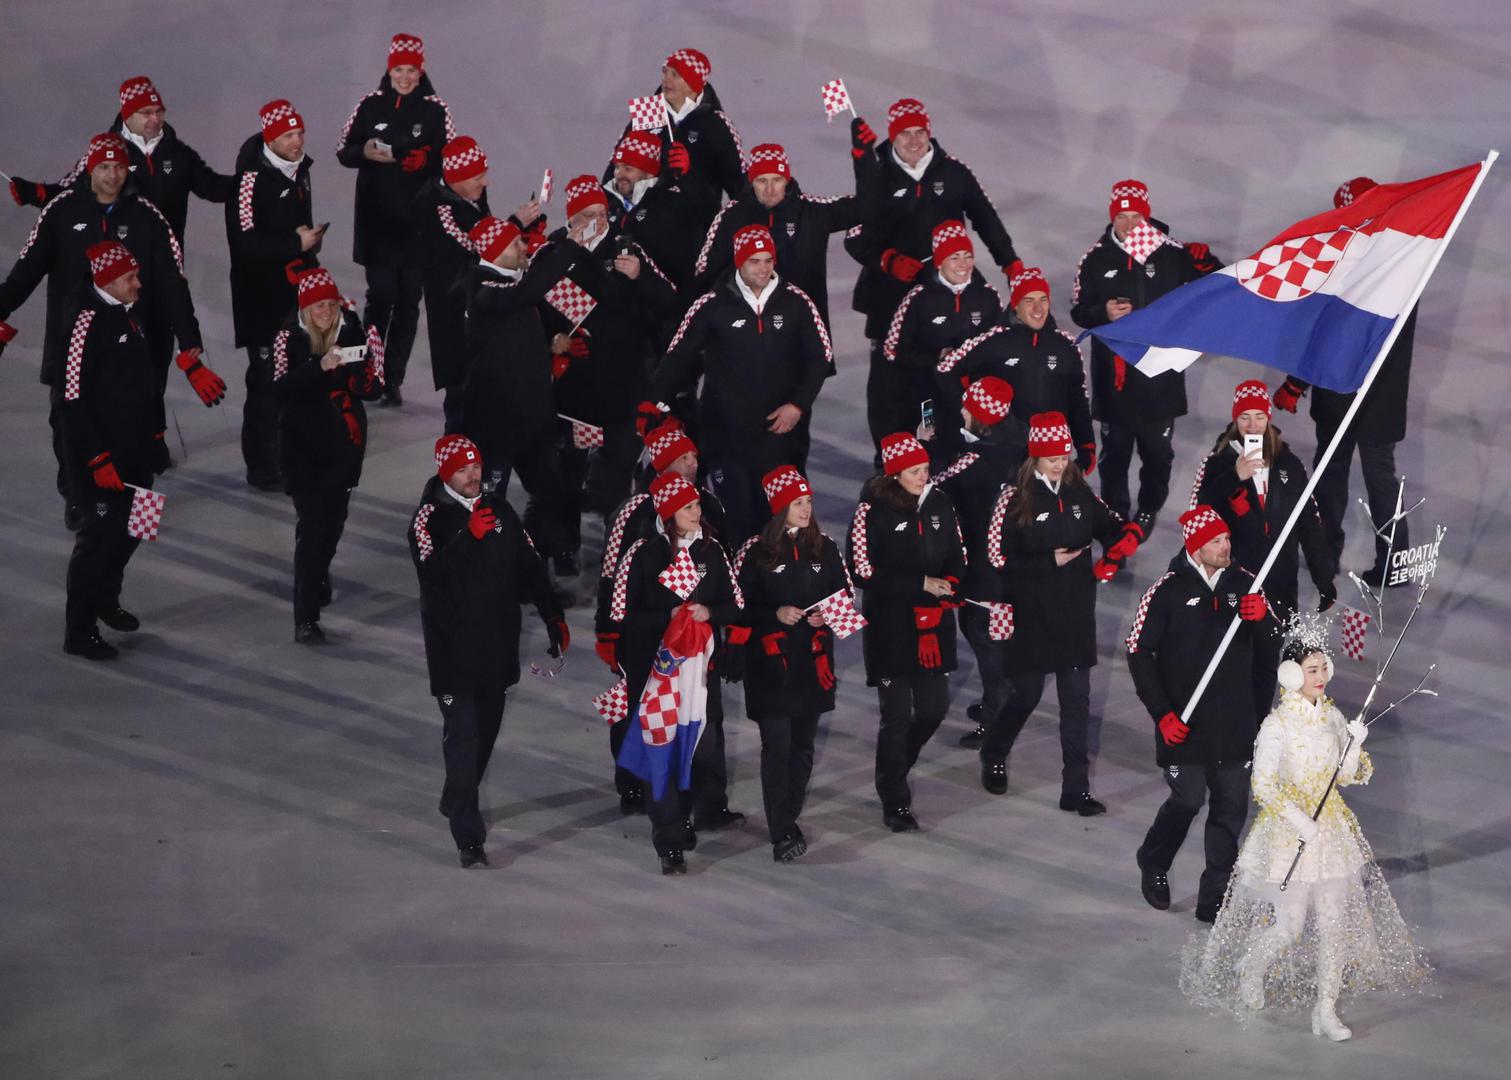 Zimske olimpijske igre otvorene su danas u Pyeongchangu, a na svečanom otvaranju bila je i hrvatska delegacija